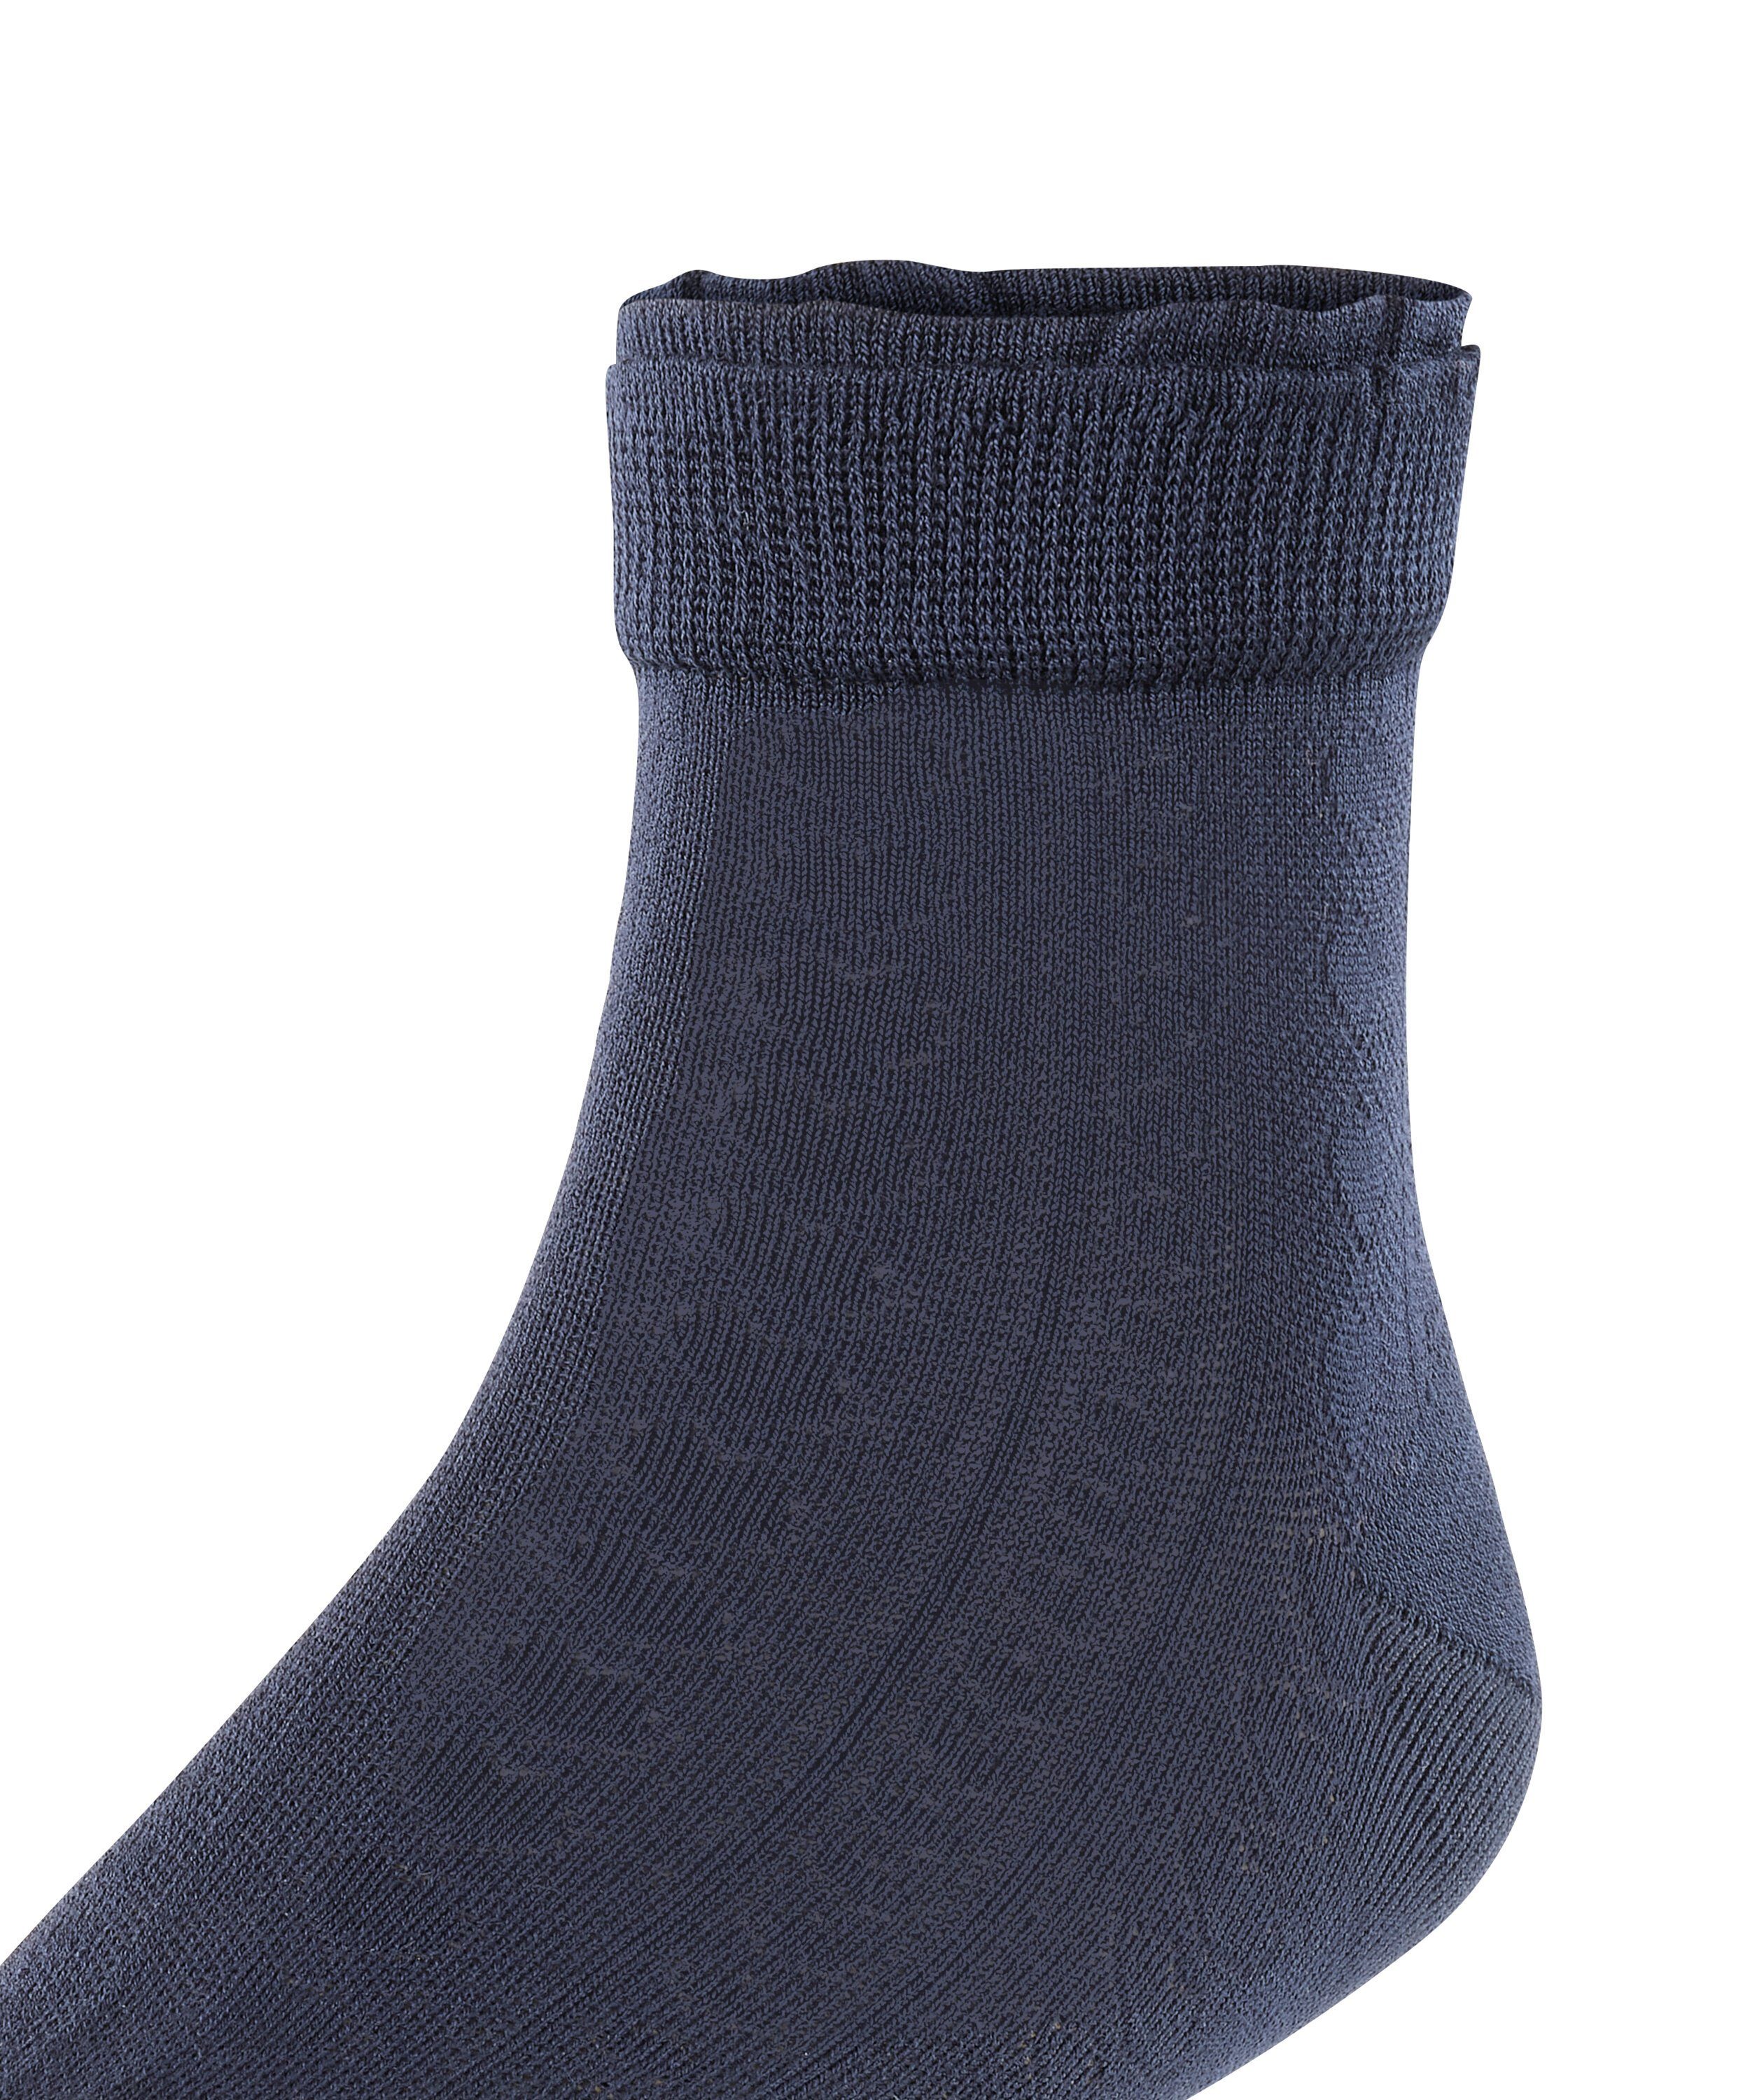 Romantic FALKE Net (6120) (1-Paar) Socken marine